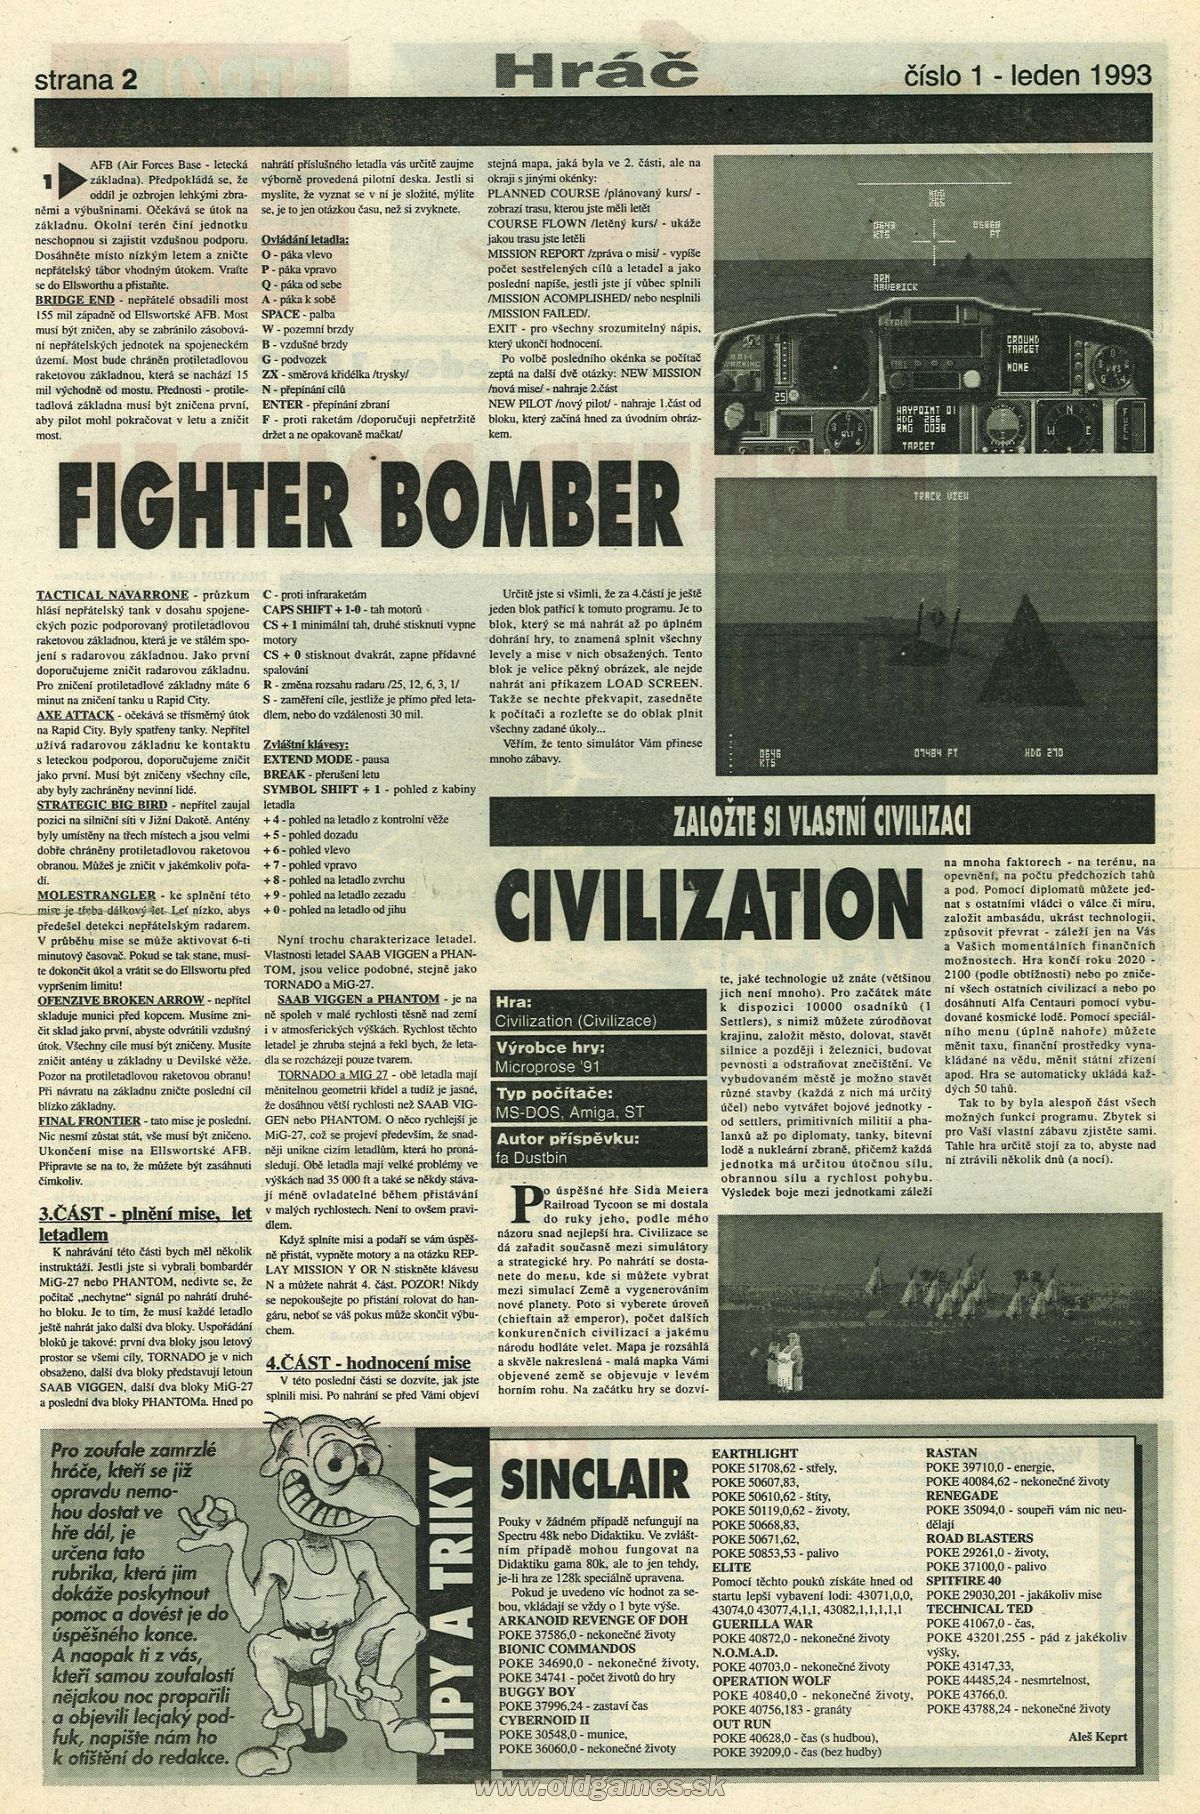 Fighter Bomber, Civilization - Návod